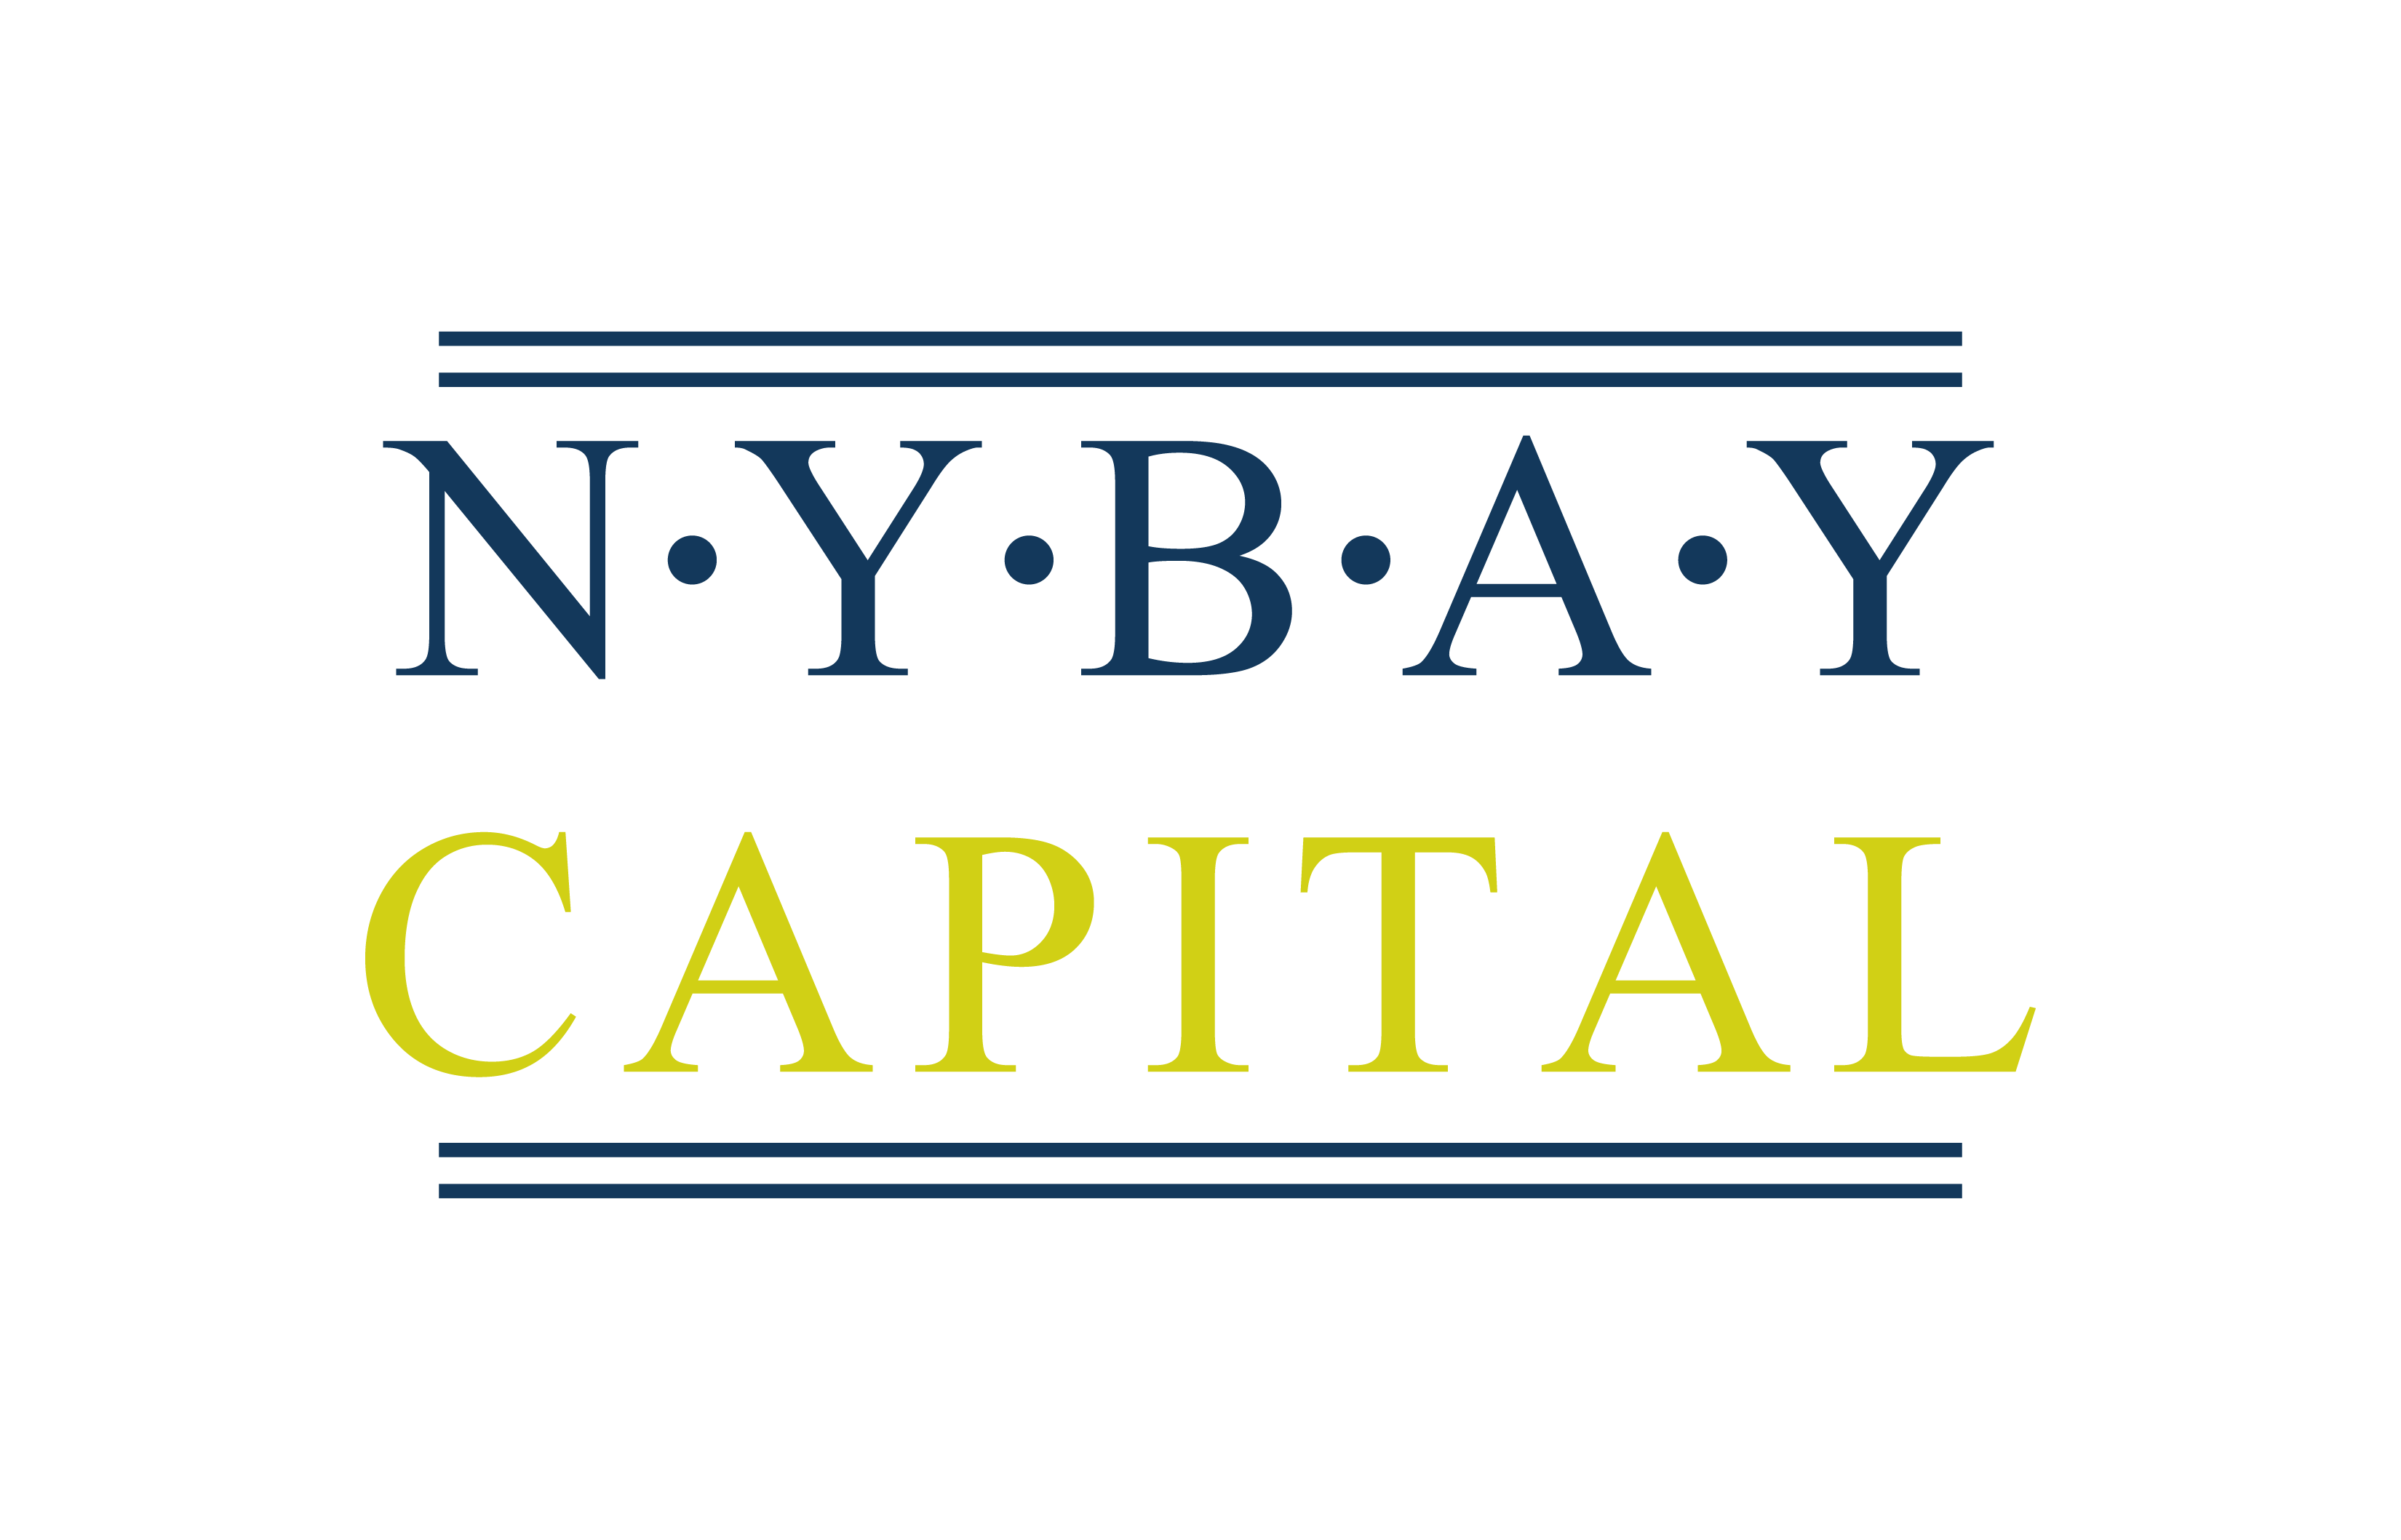 NY Bay Capital – Mexico/NYC